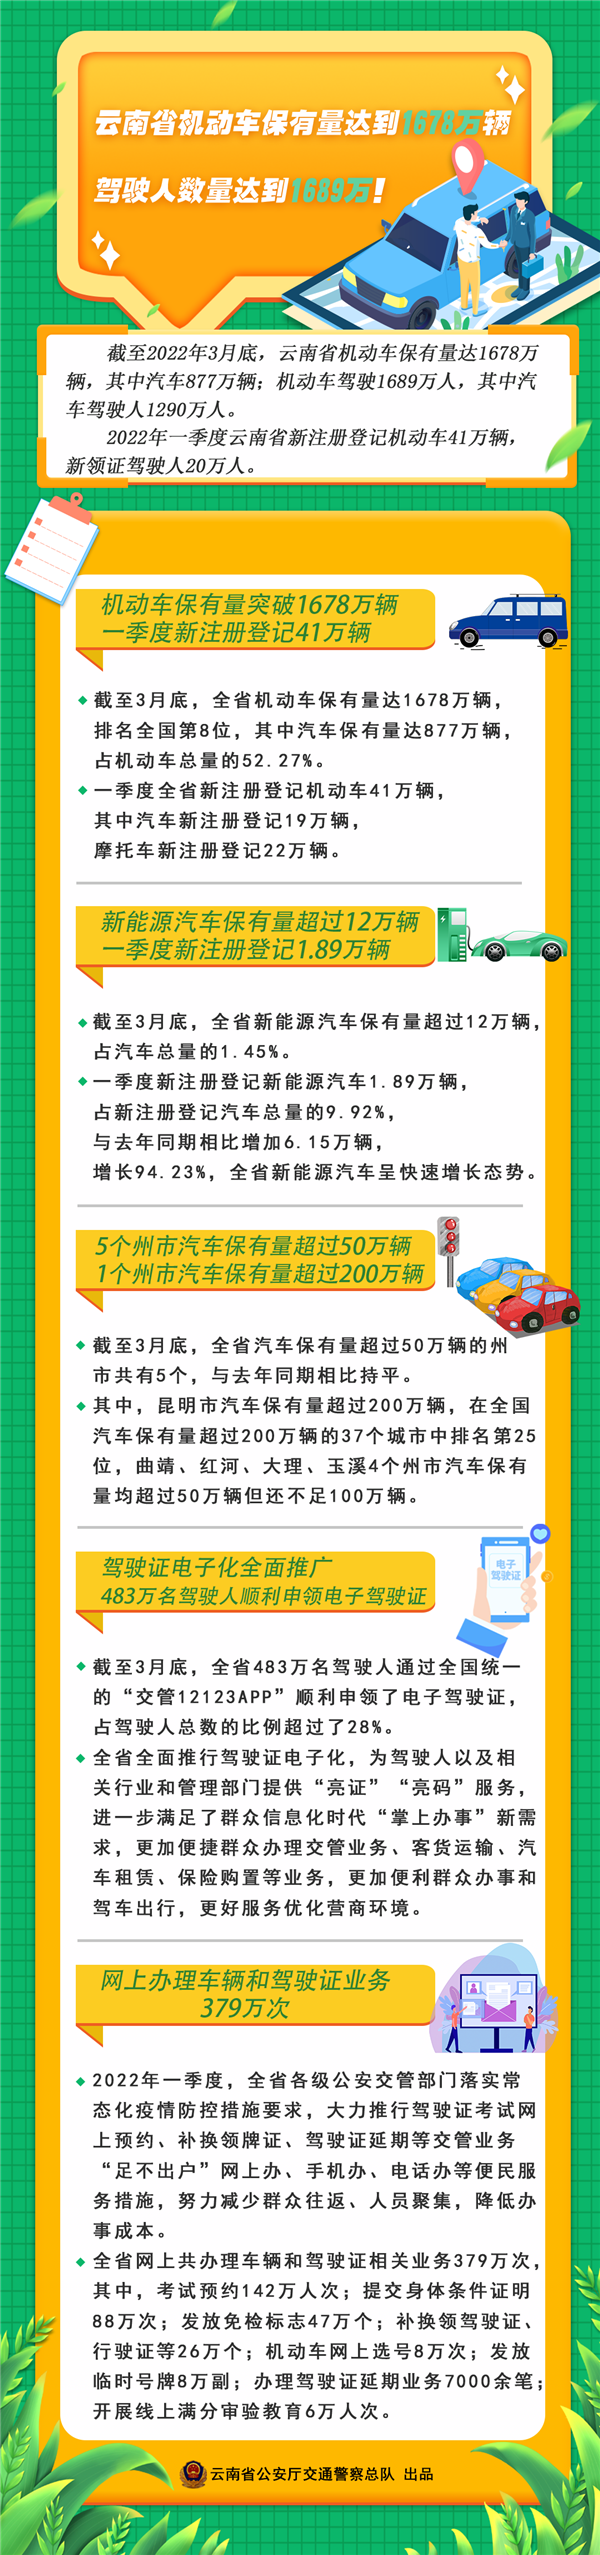 云南省机动车保有量达1678万辆